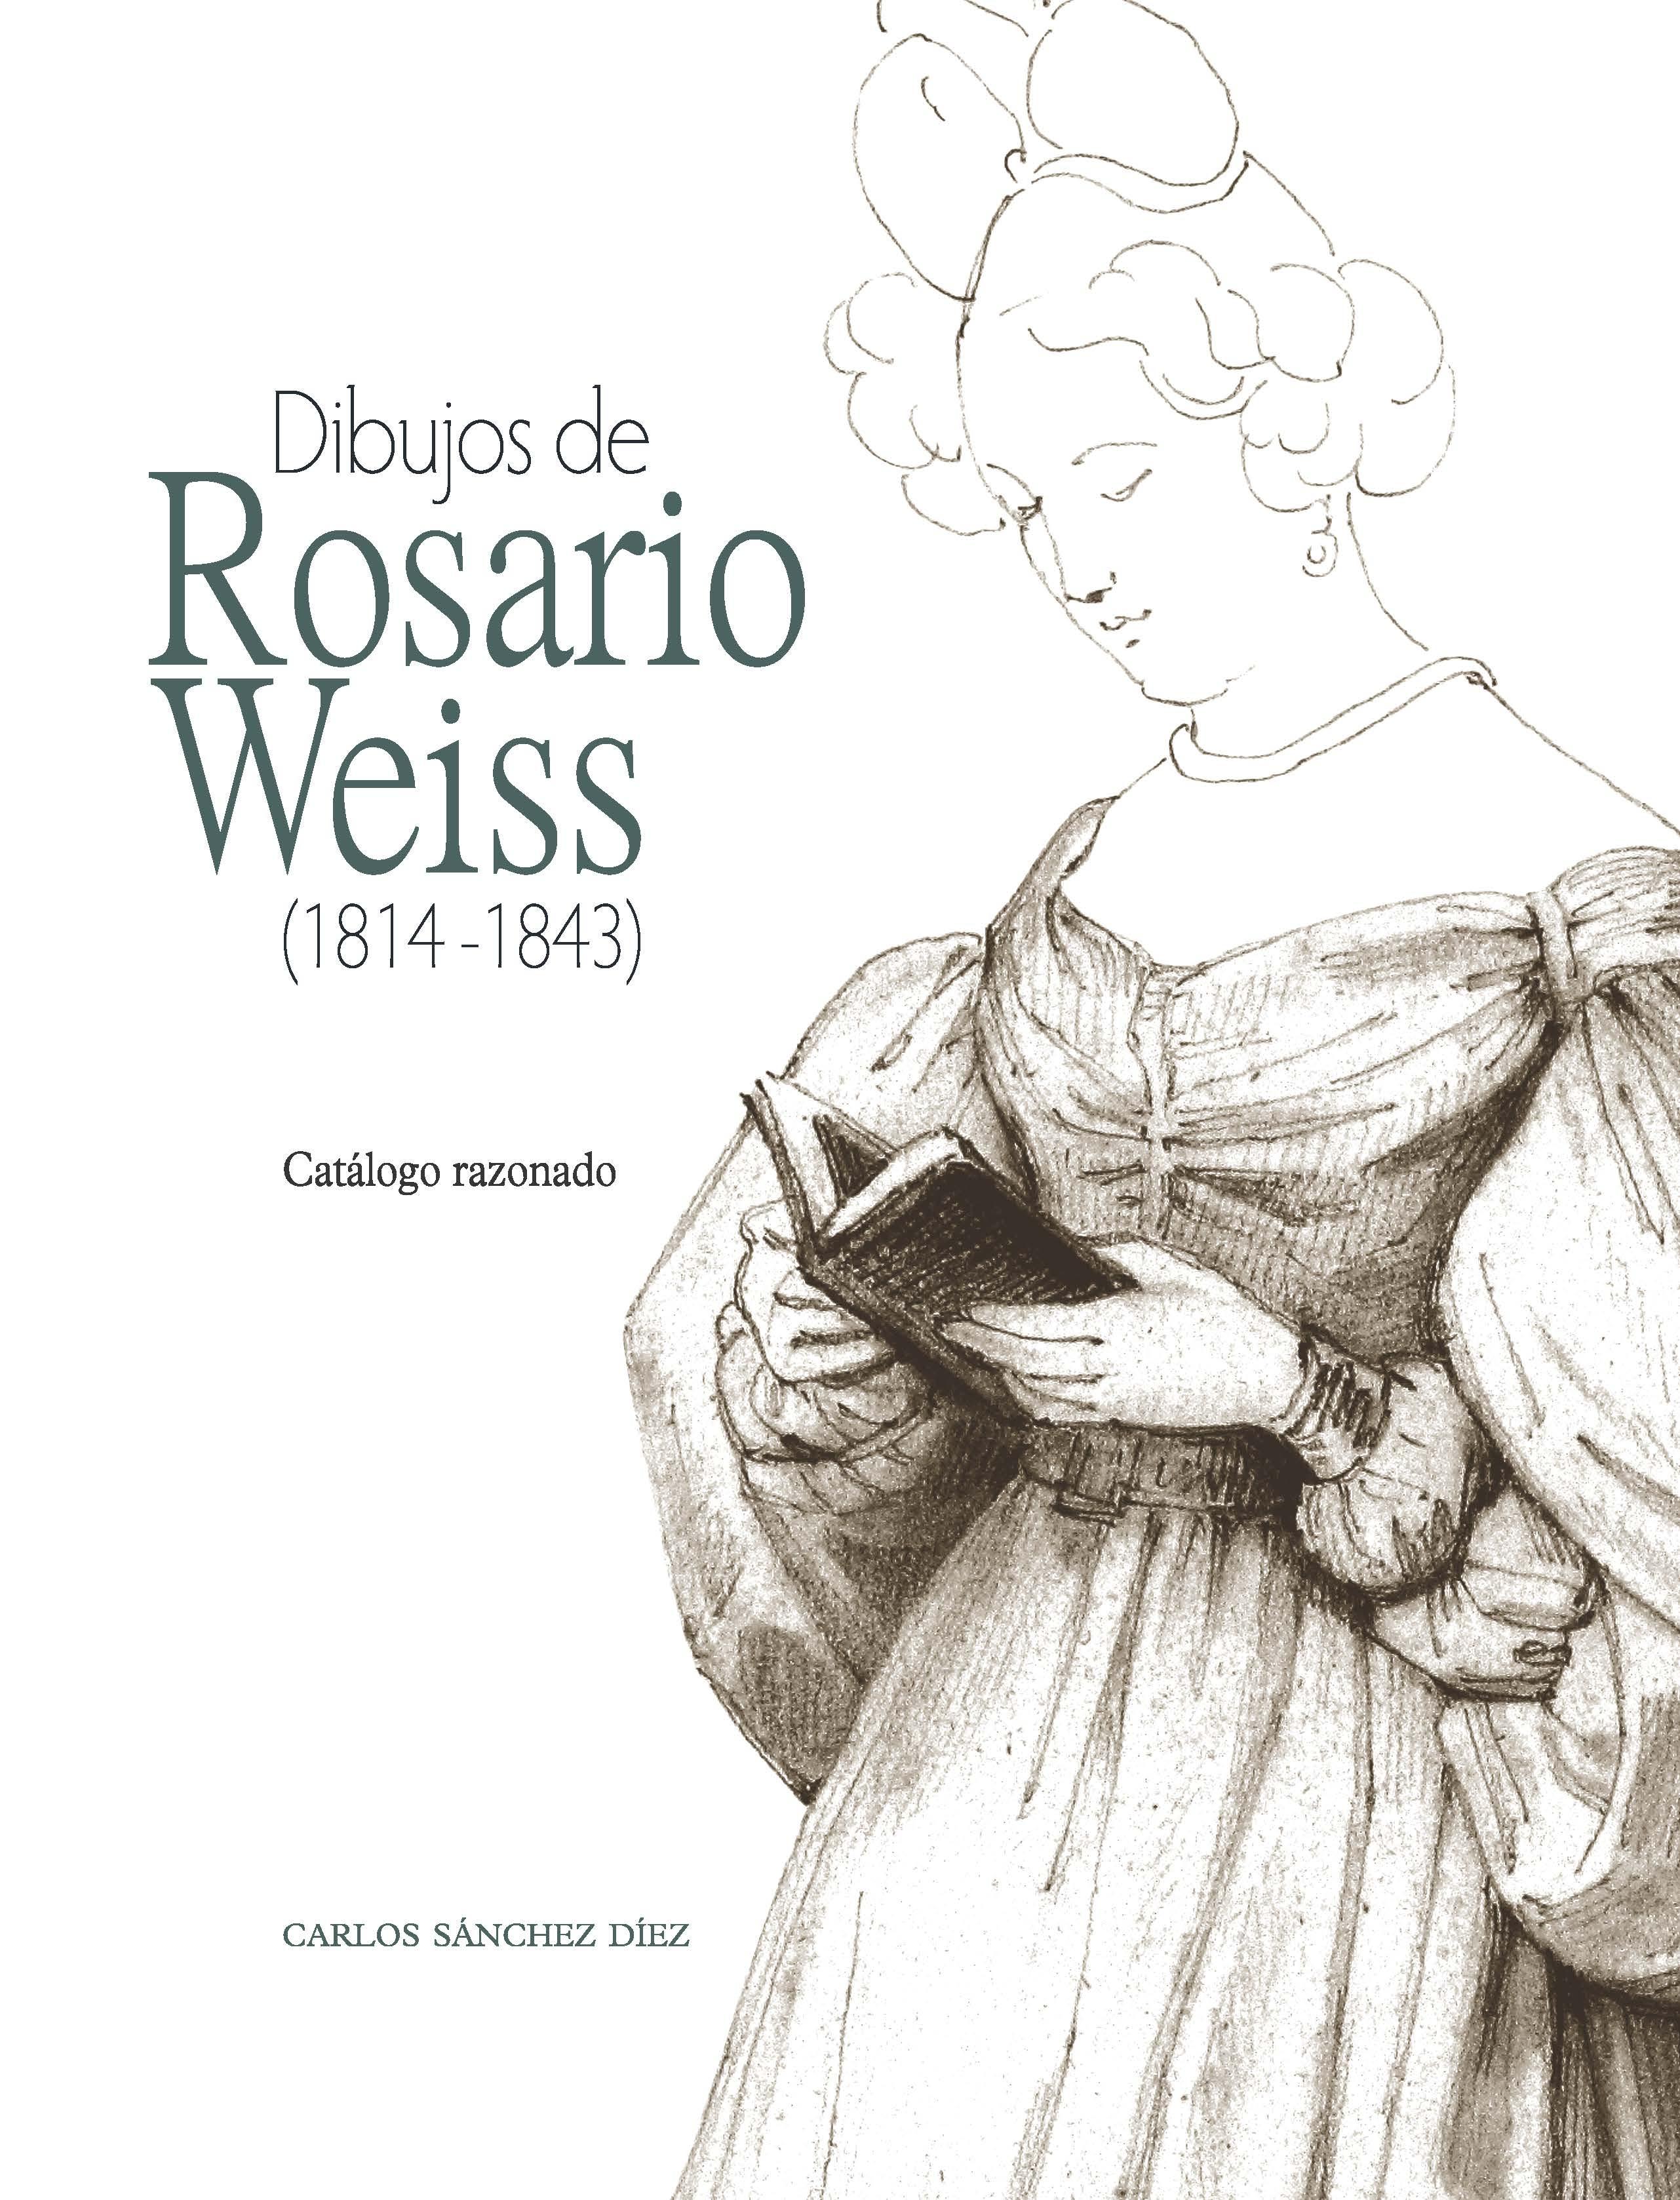 Dibujos de Rosario Weiss (1814-1843) "Catalogo Razonado". 